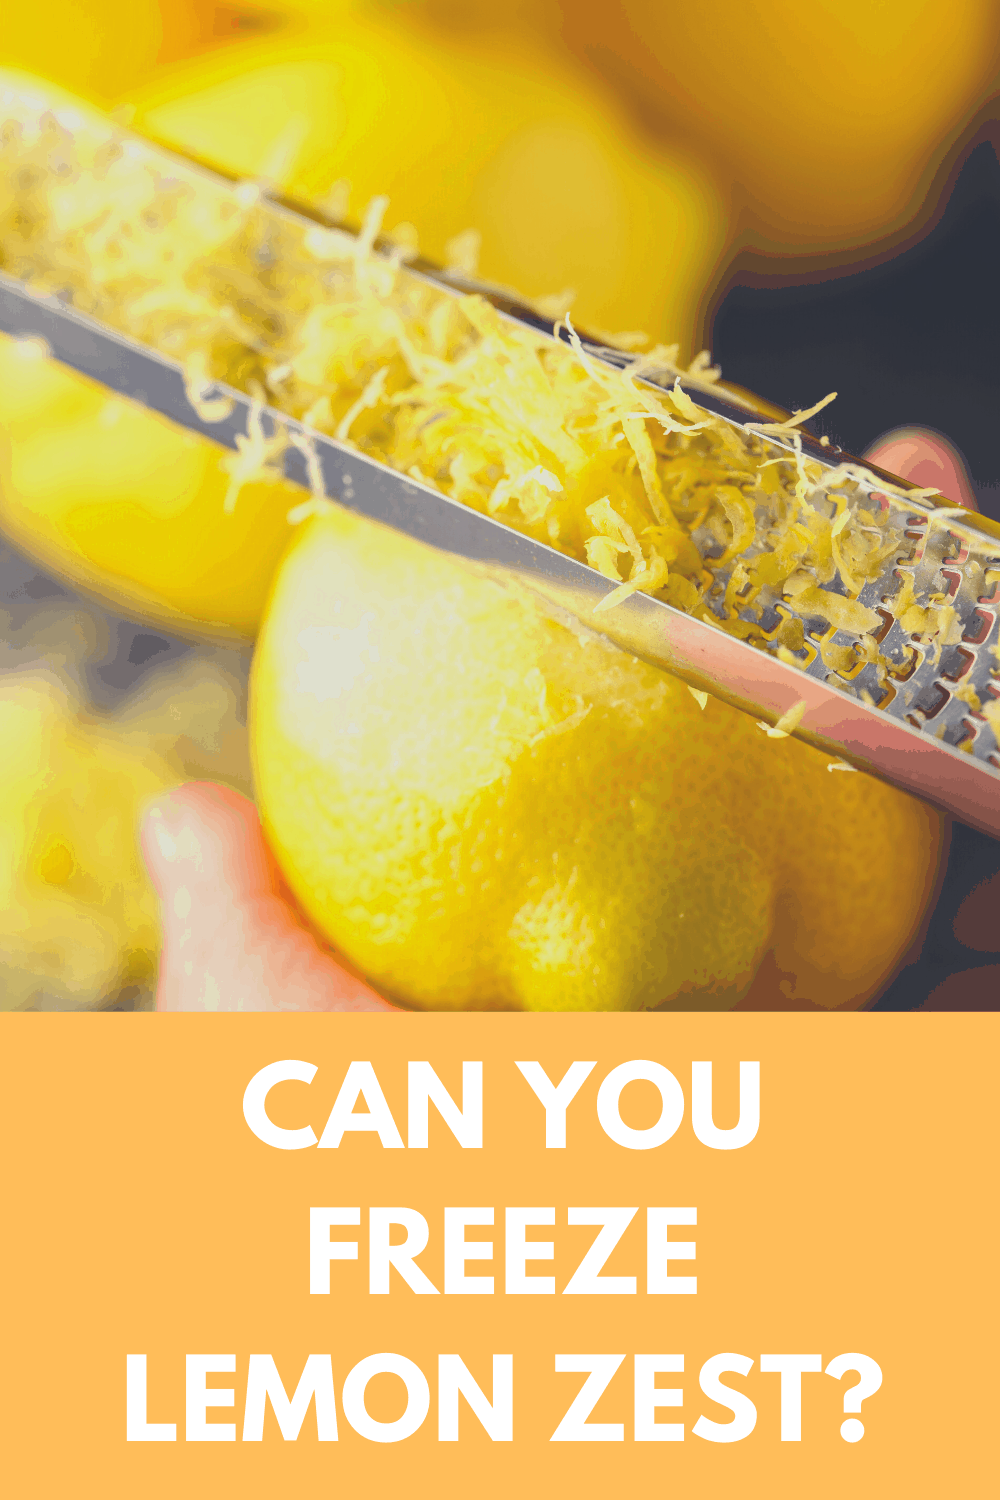 Can you freeze lemon zest